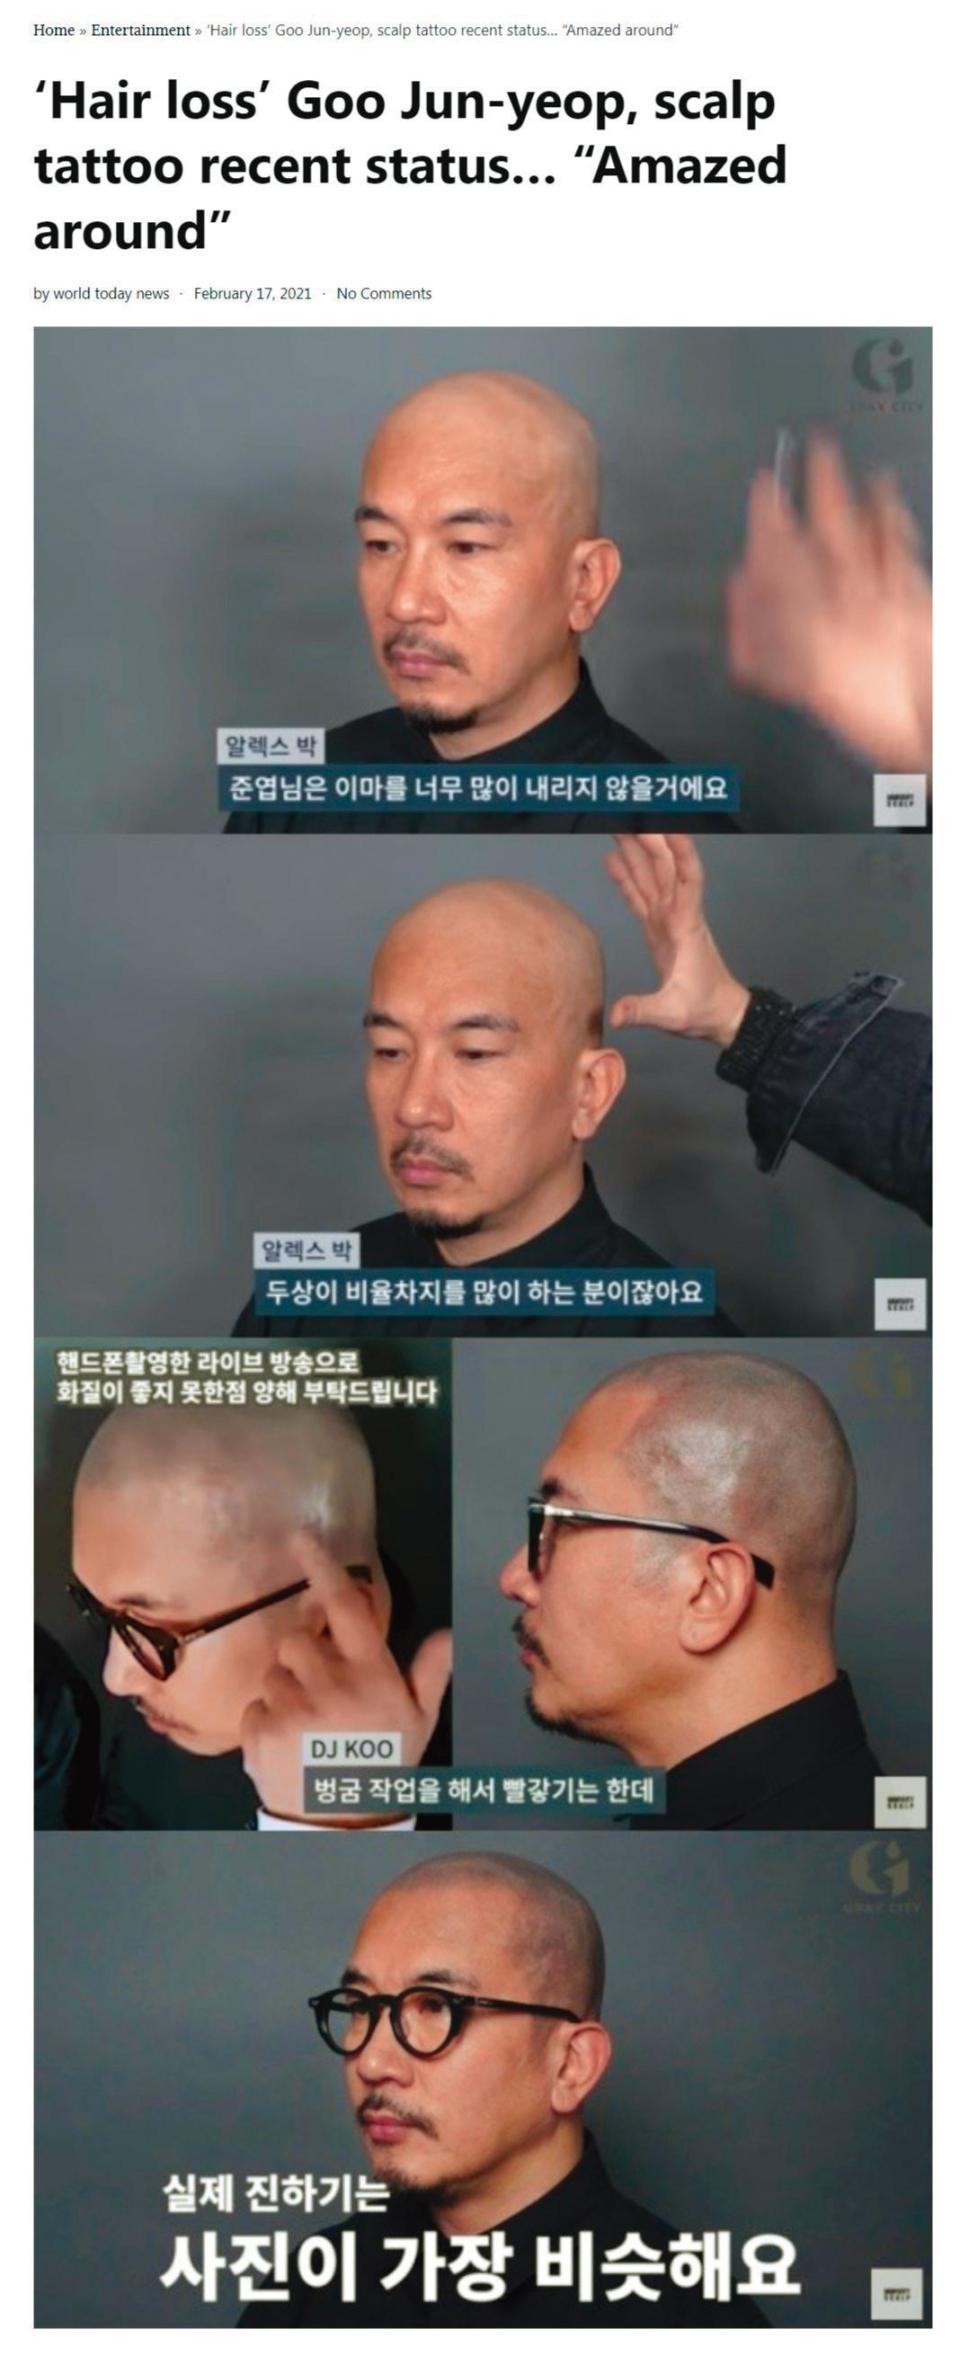 具俊曄曾經拍攝影片，分享自己做頭皮紋身的過程。（翻攝自World Today News）